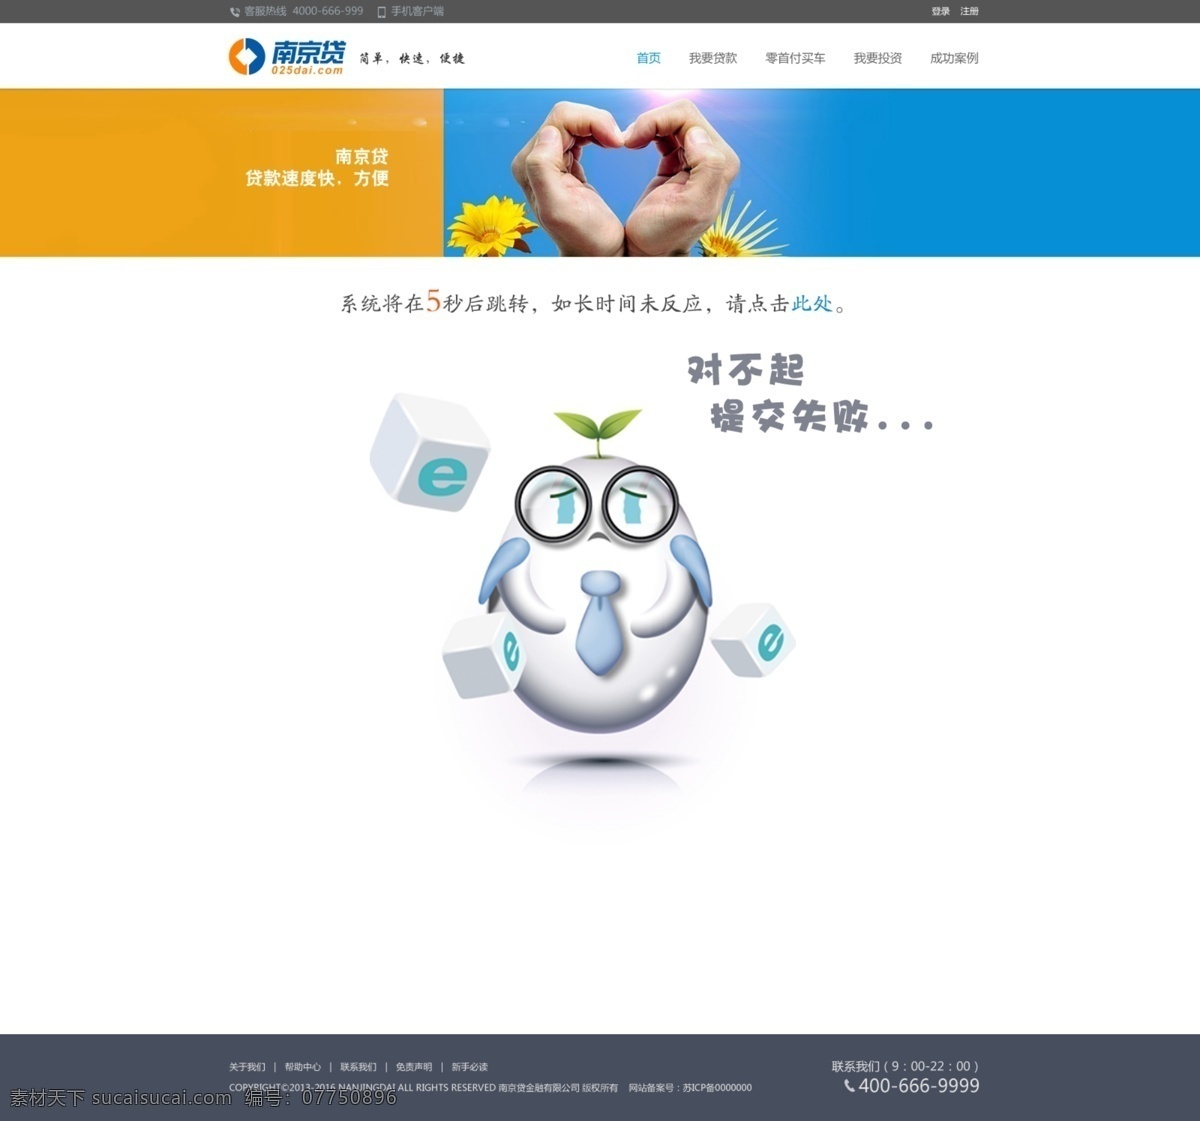 提交 失败 跳 转 页面 网页 贷款 平台 跳转 沮丧 卡通 对不起 web 界面设计 中文模板 白色